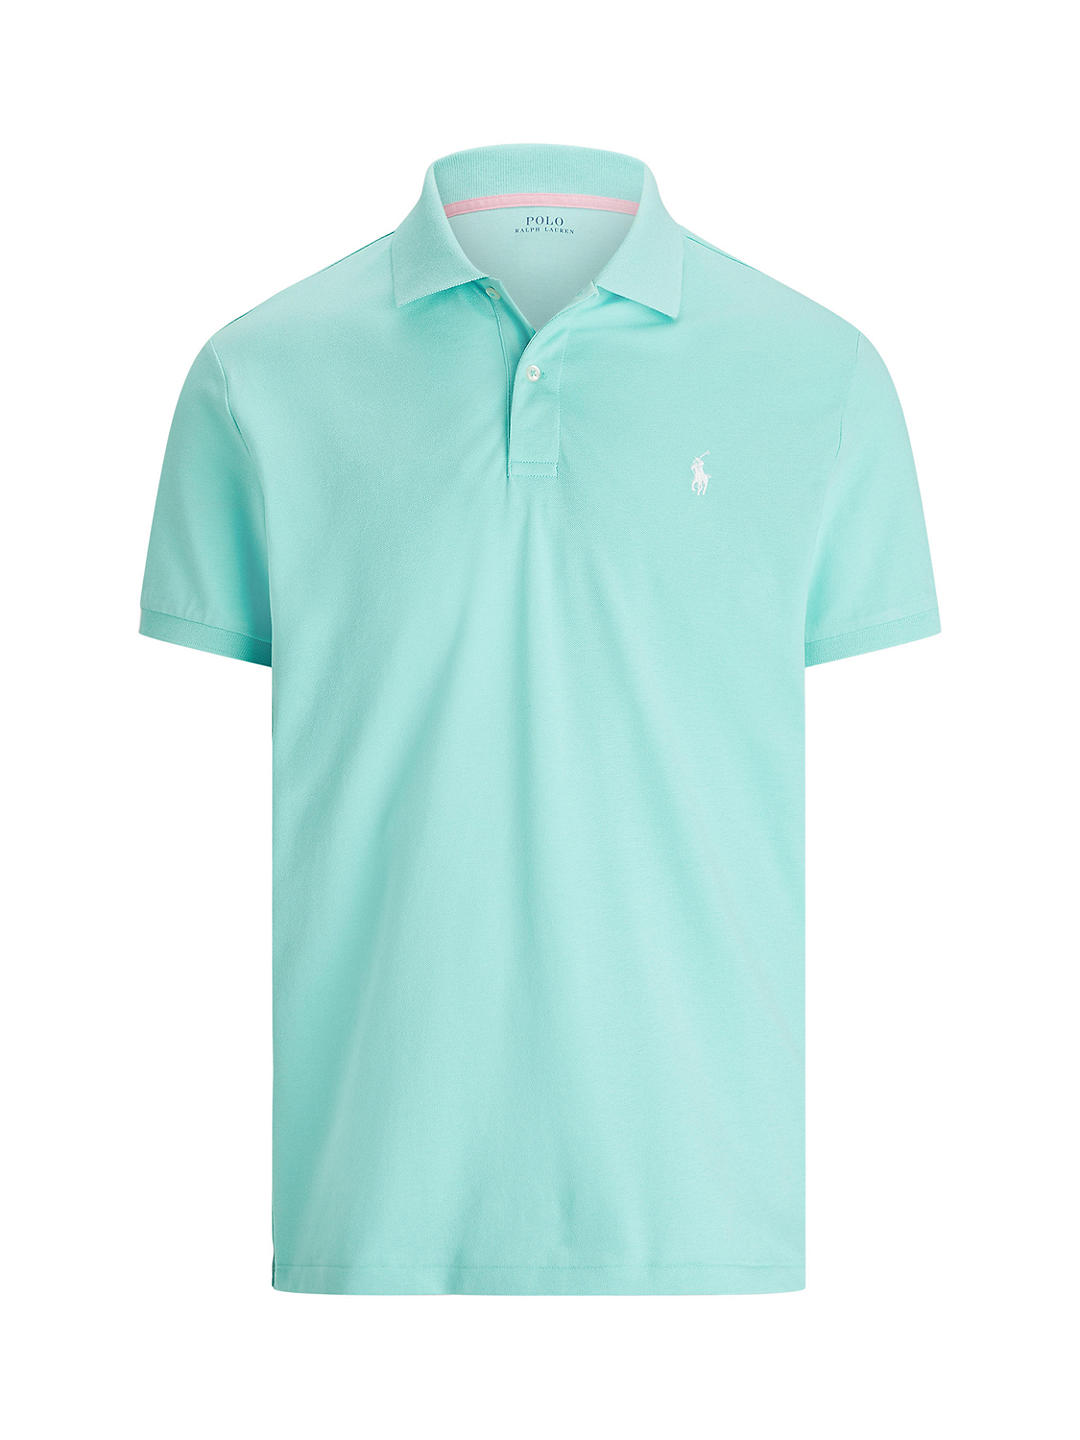 Polo Golf Ralph Lauren Tailored Fit Performance Mesh Polo Shirt, Light Mint